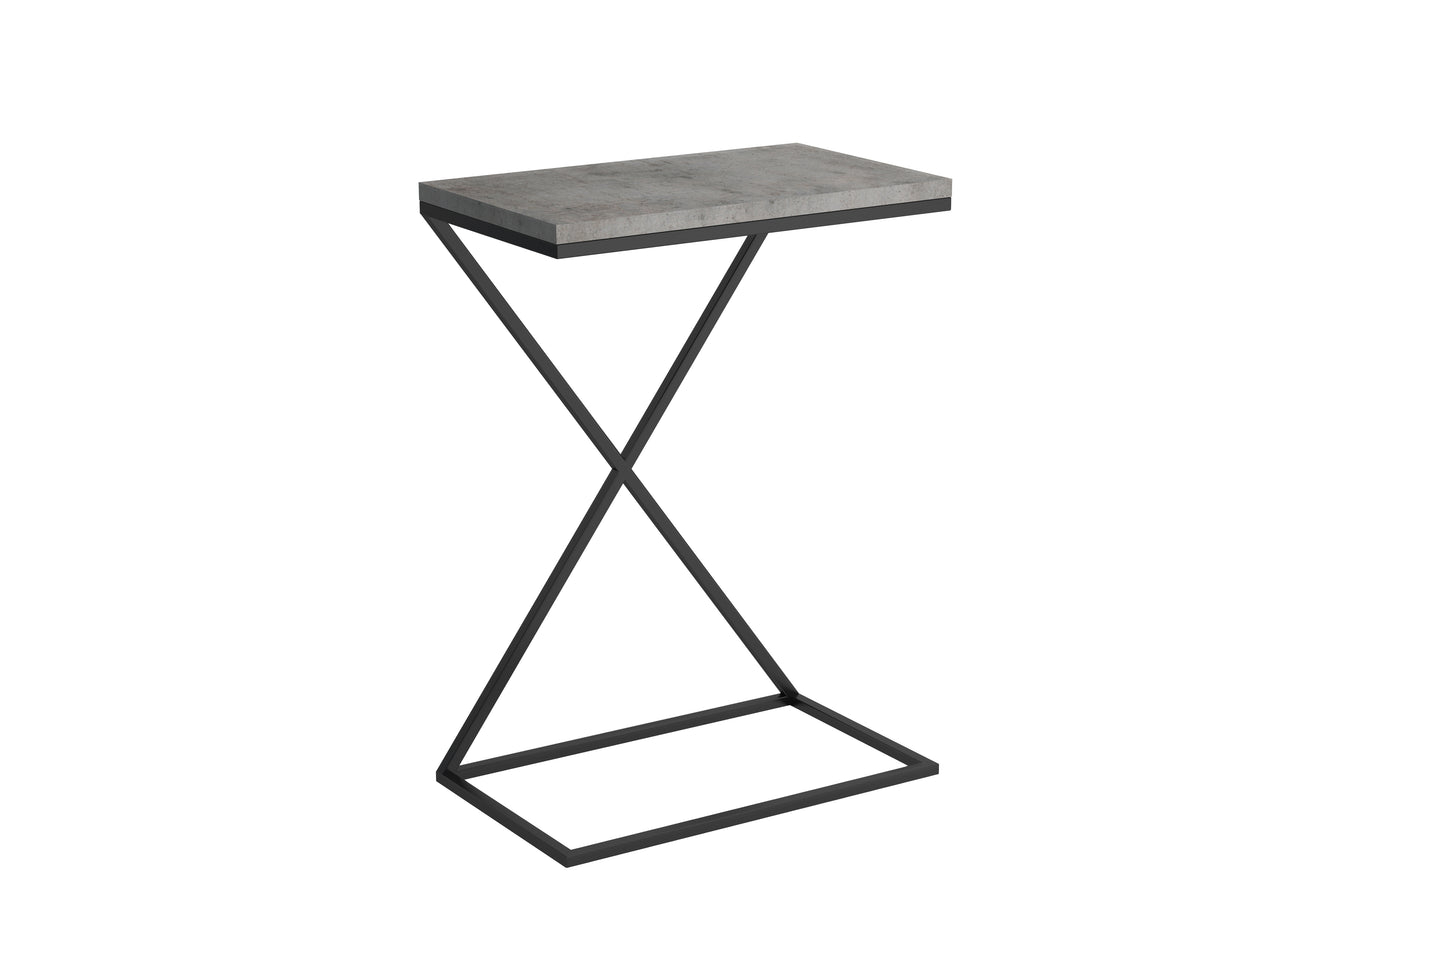 Kolorystyka blatu dostawki stolika Lugo beton-marmur szary. Idealny do nowoczesnych, loftowych pomiesczeń.